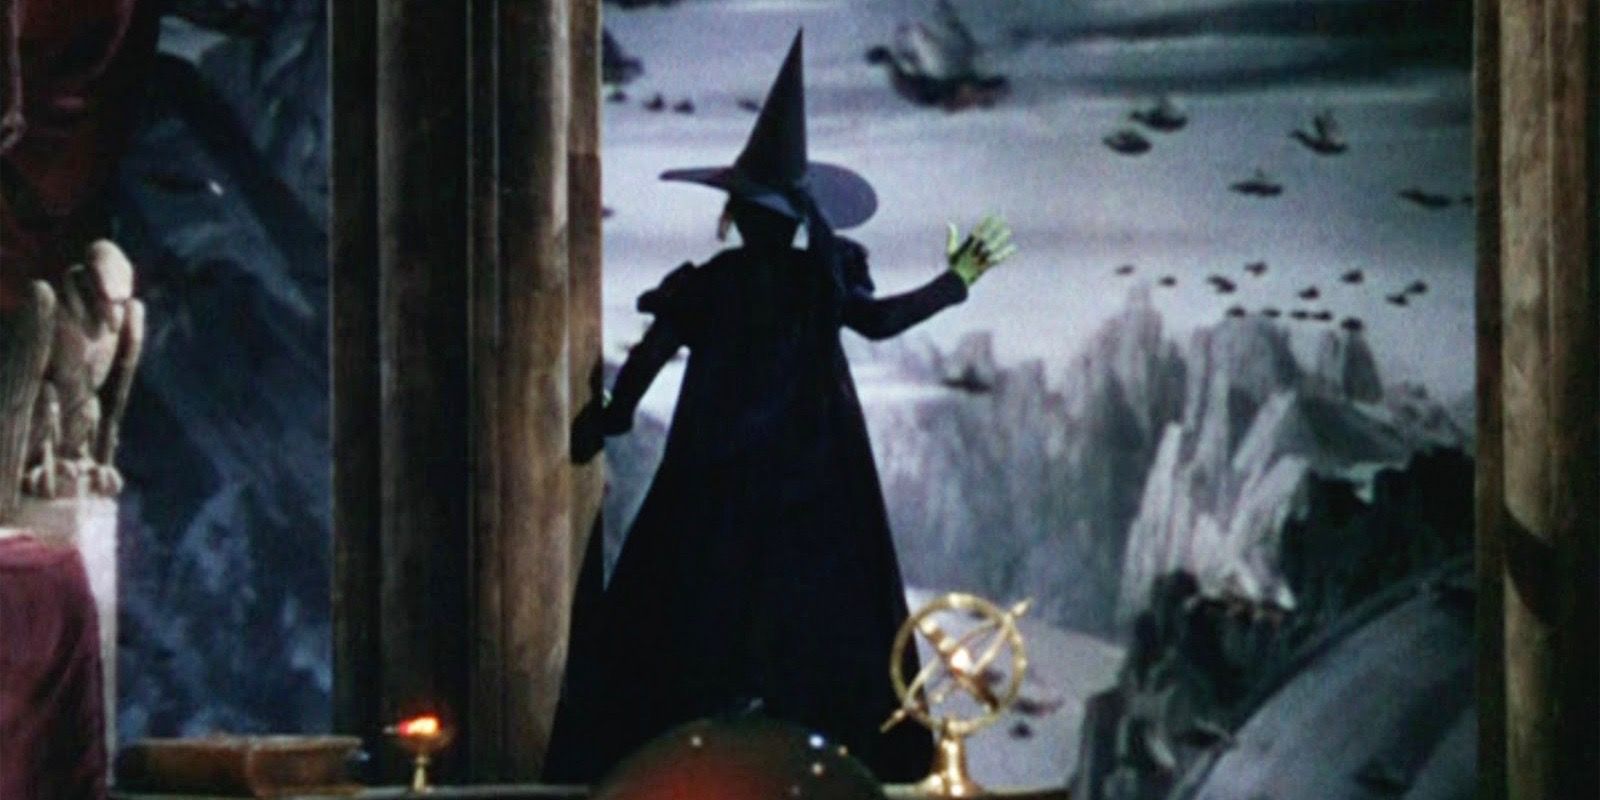 Wizard of Oz 7 Weird Myths & 8 Weirder Facts About the Original